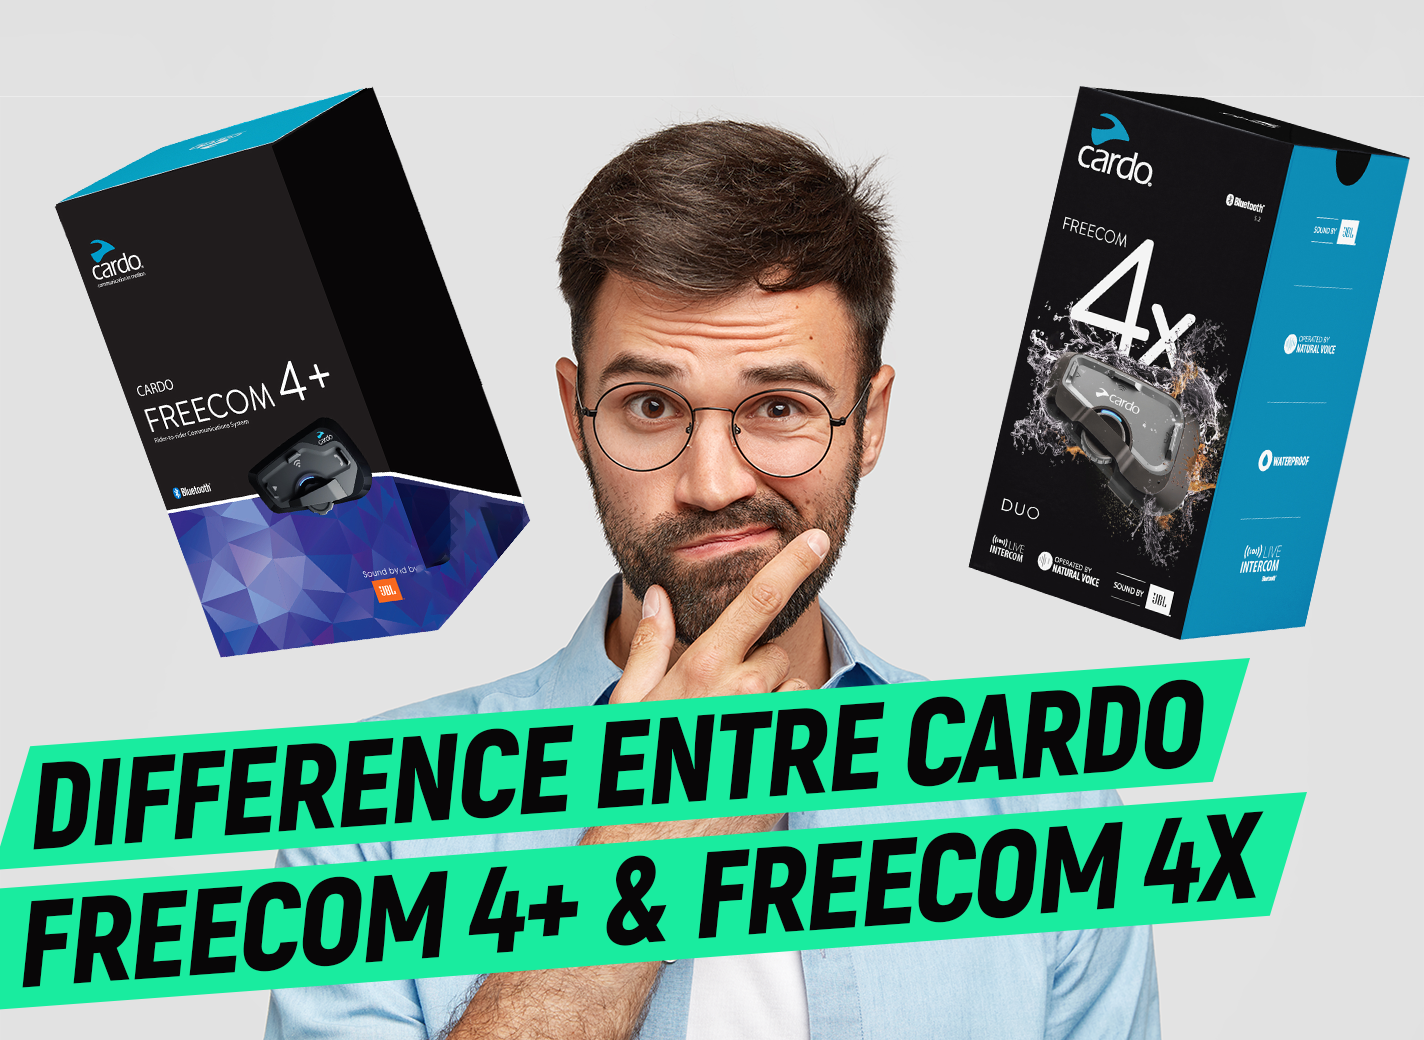 Quelle différence entre l'intercom cardo freecom 4+ et freecom 4x